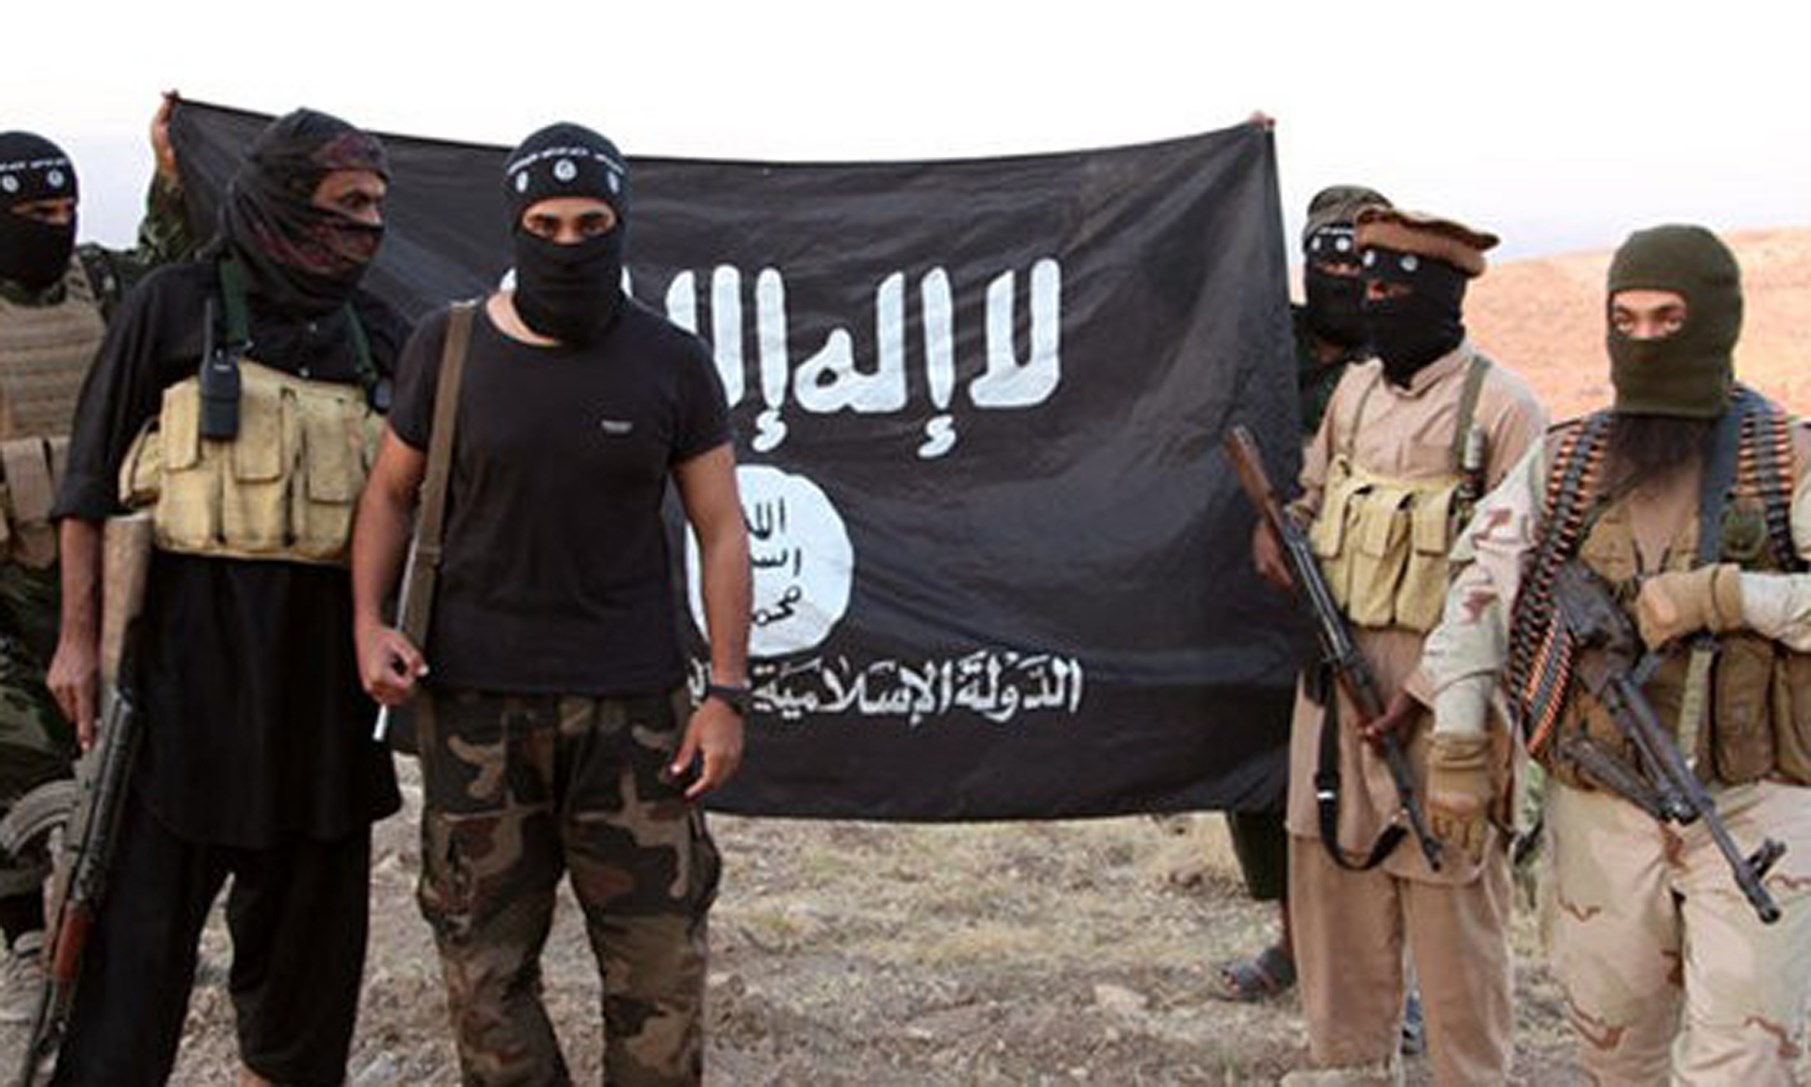 غلوبال ريسيرش: امريكا والناتو والطغاة في الخليج وإسرائيل يدعمون تنظيم "داعش" الارهابي